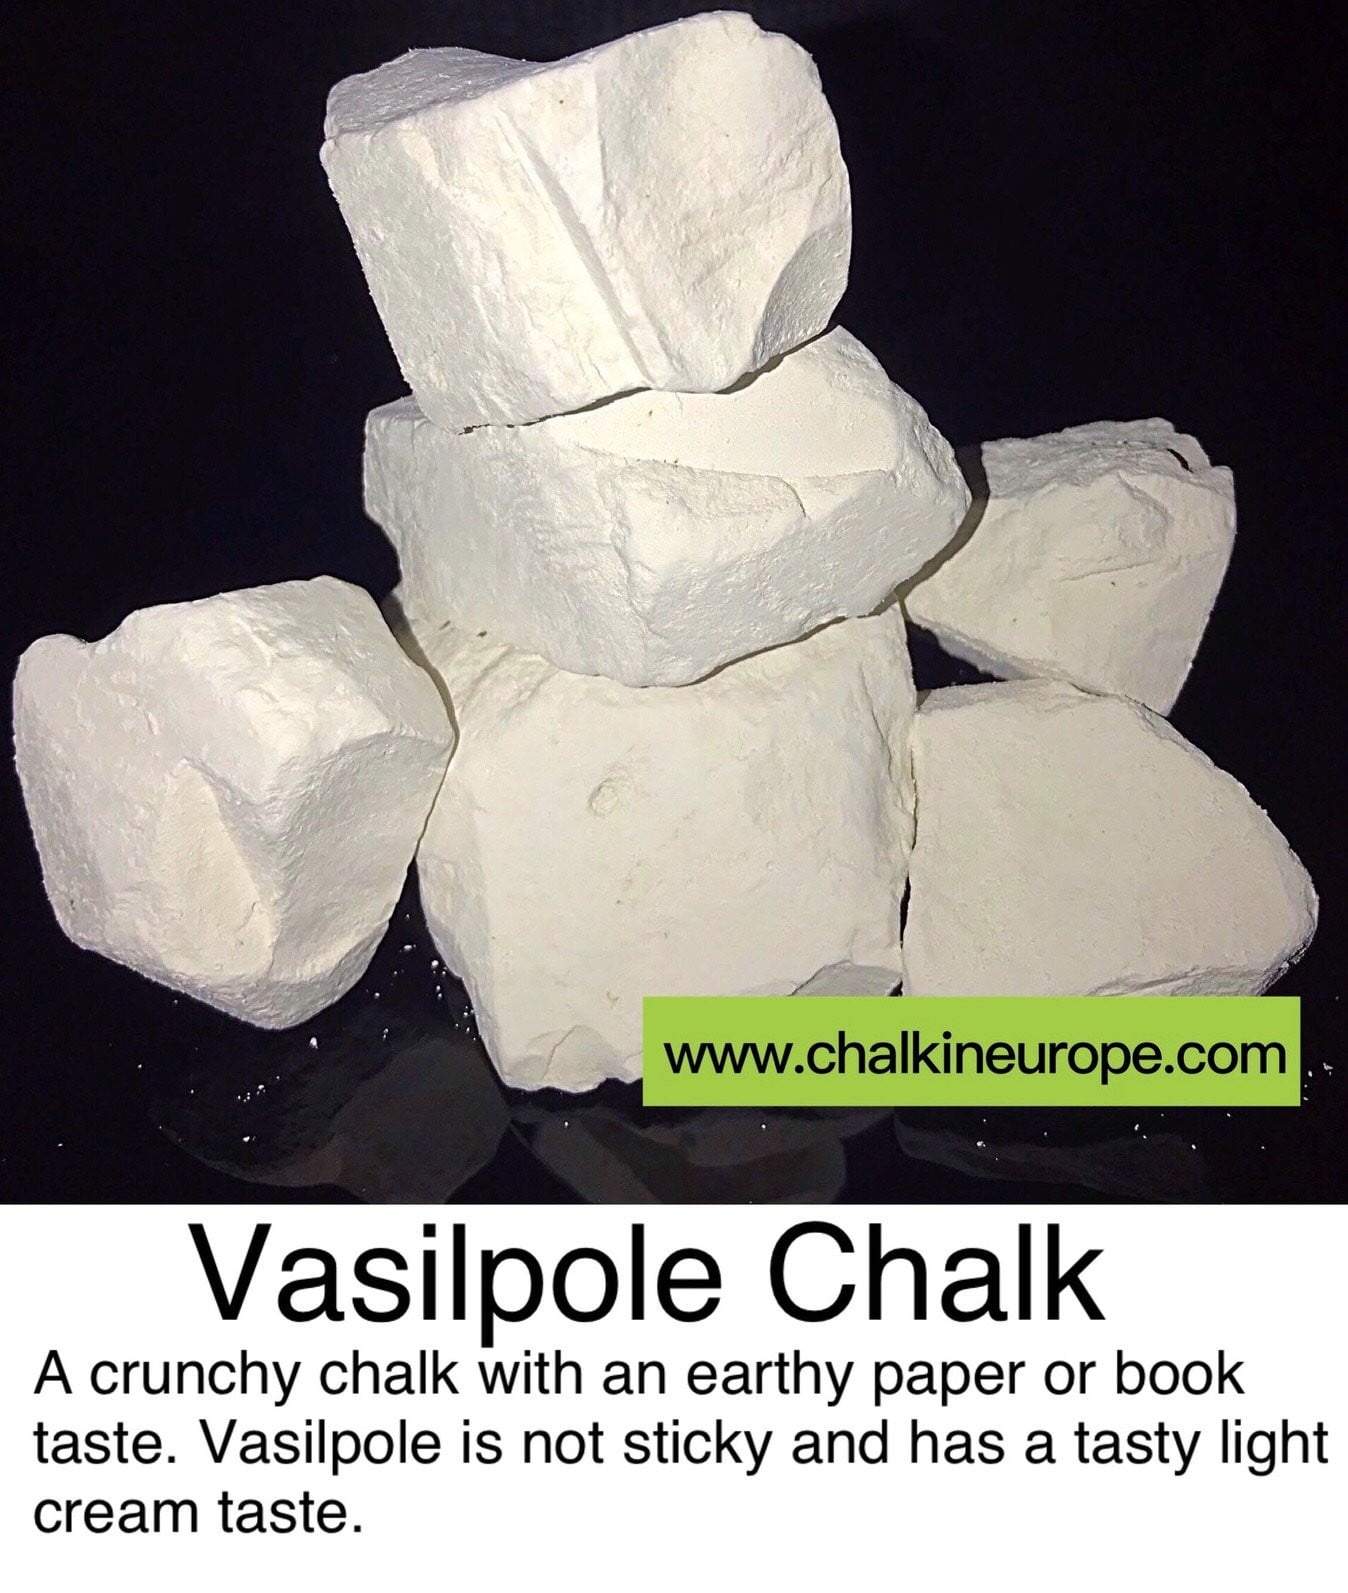 Vasilpoles krīts - Chalkineurope